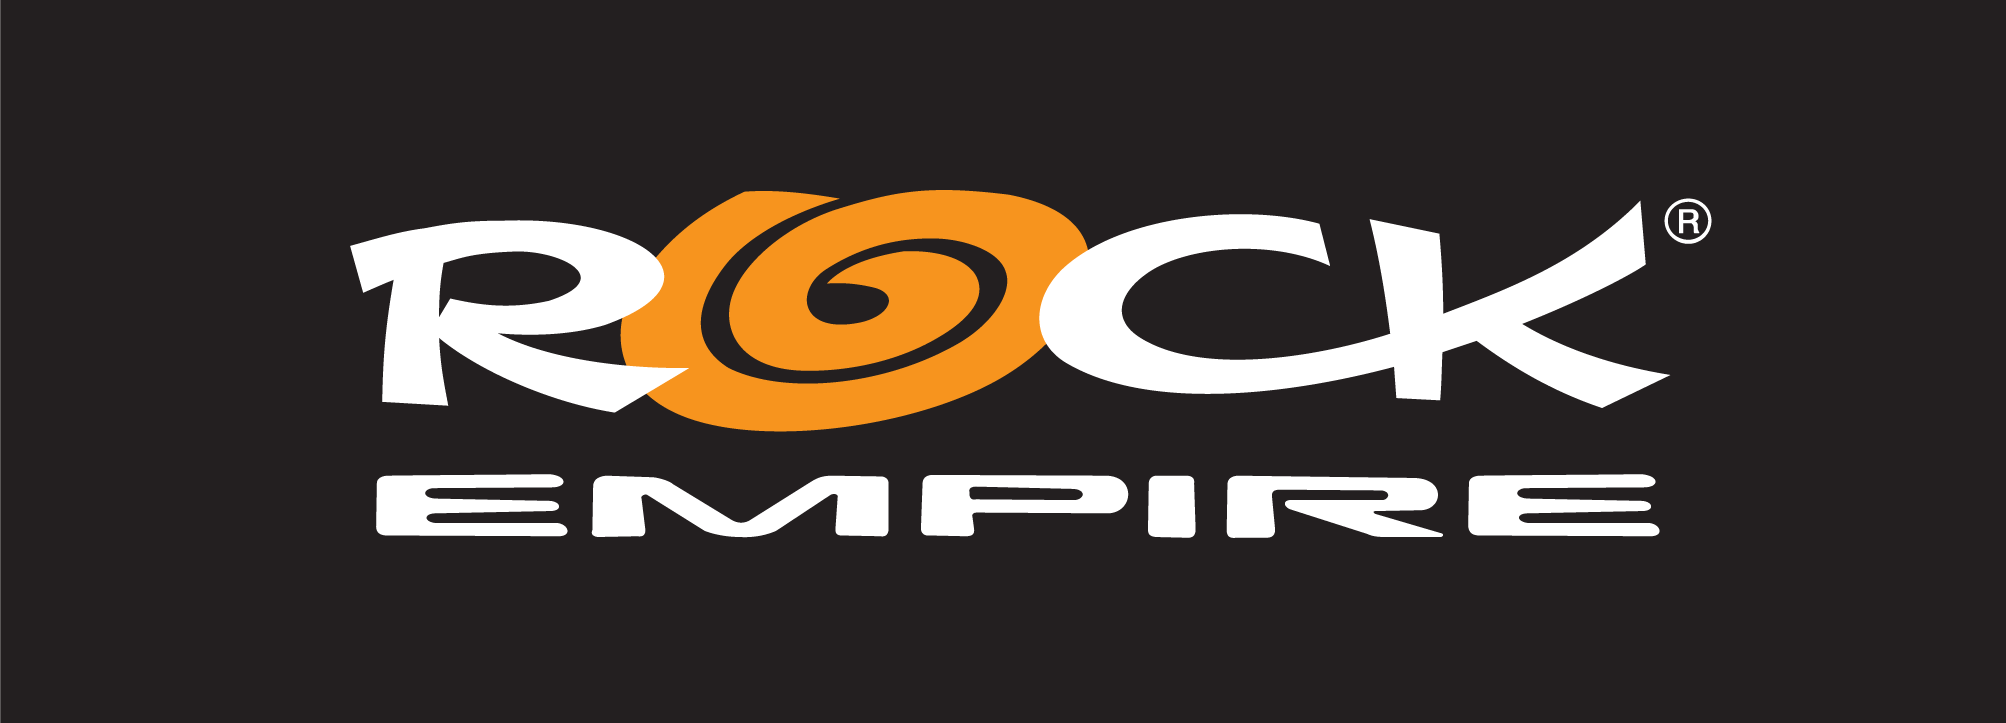 Logo Rock Empire